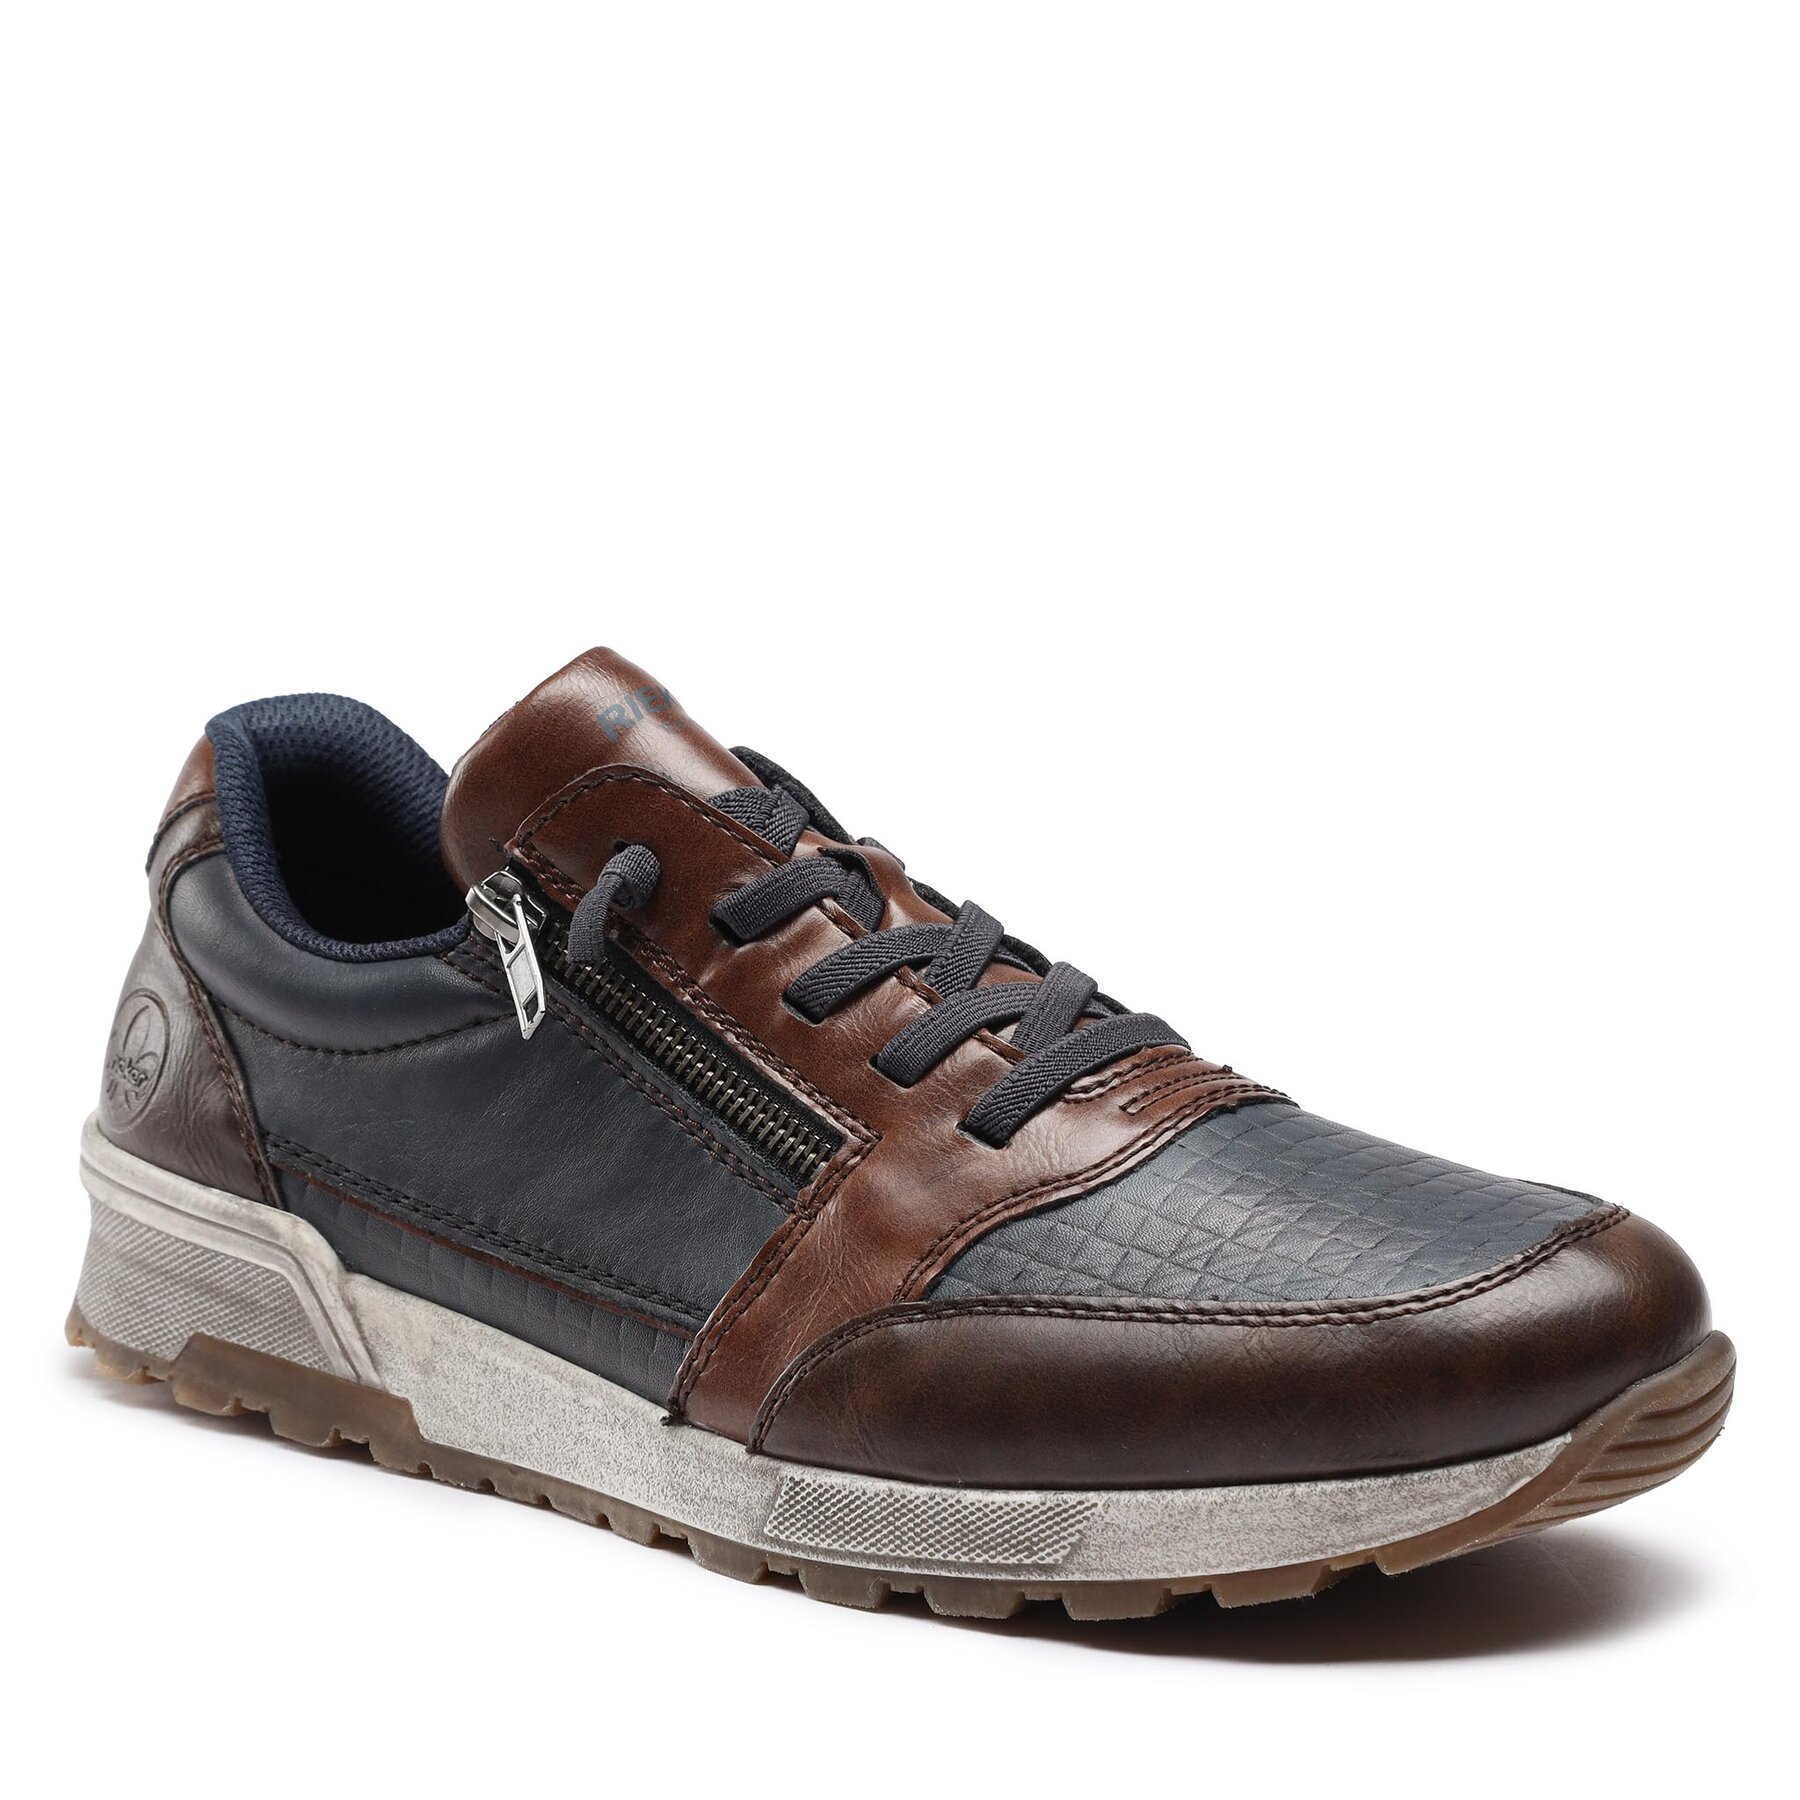 Sneakers Rieker 15163-14 Toffee / Navy / Wood 14